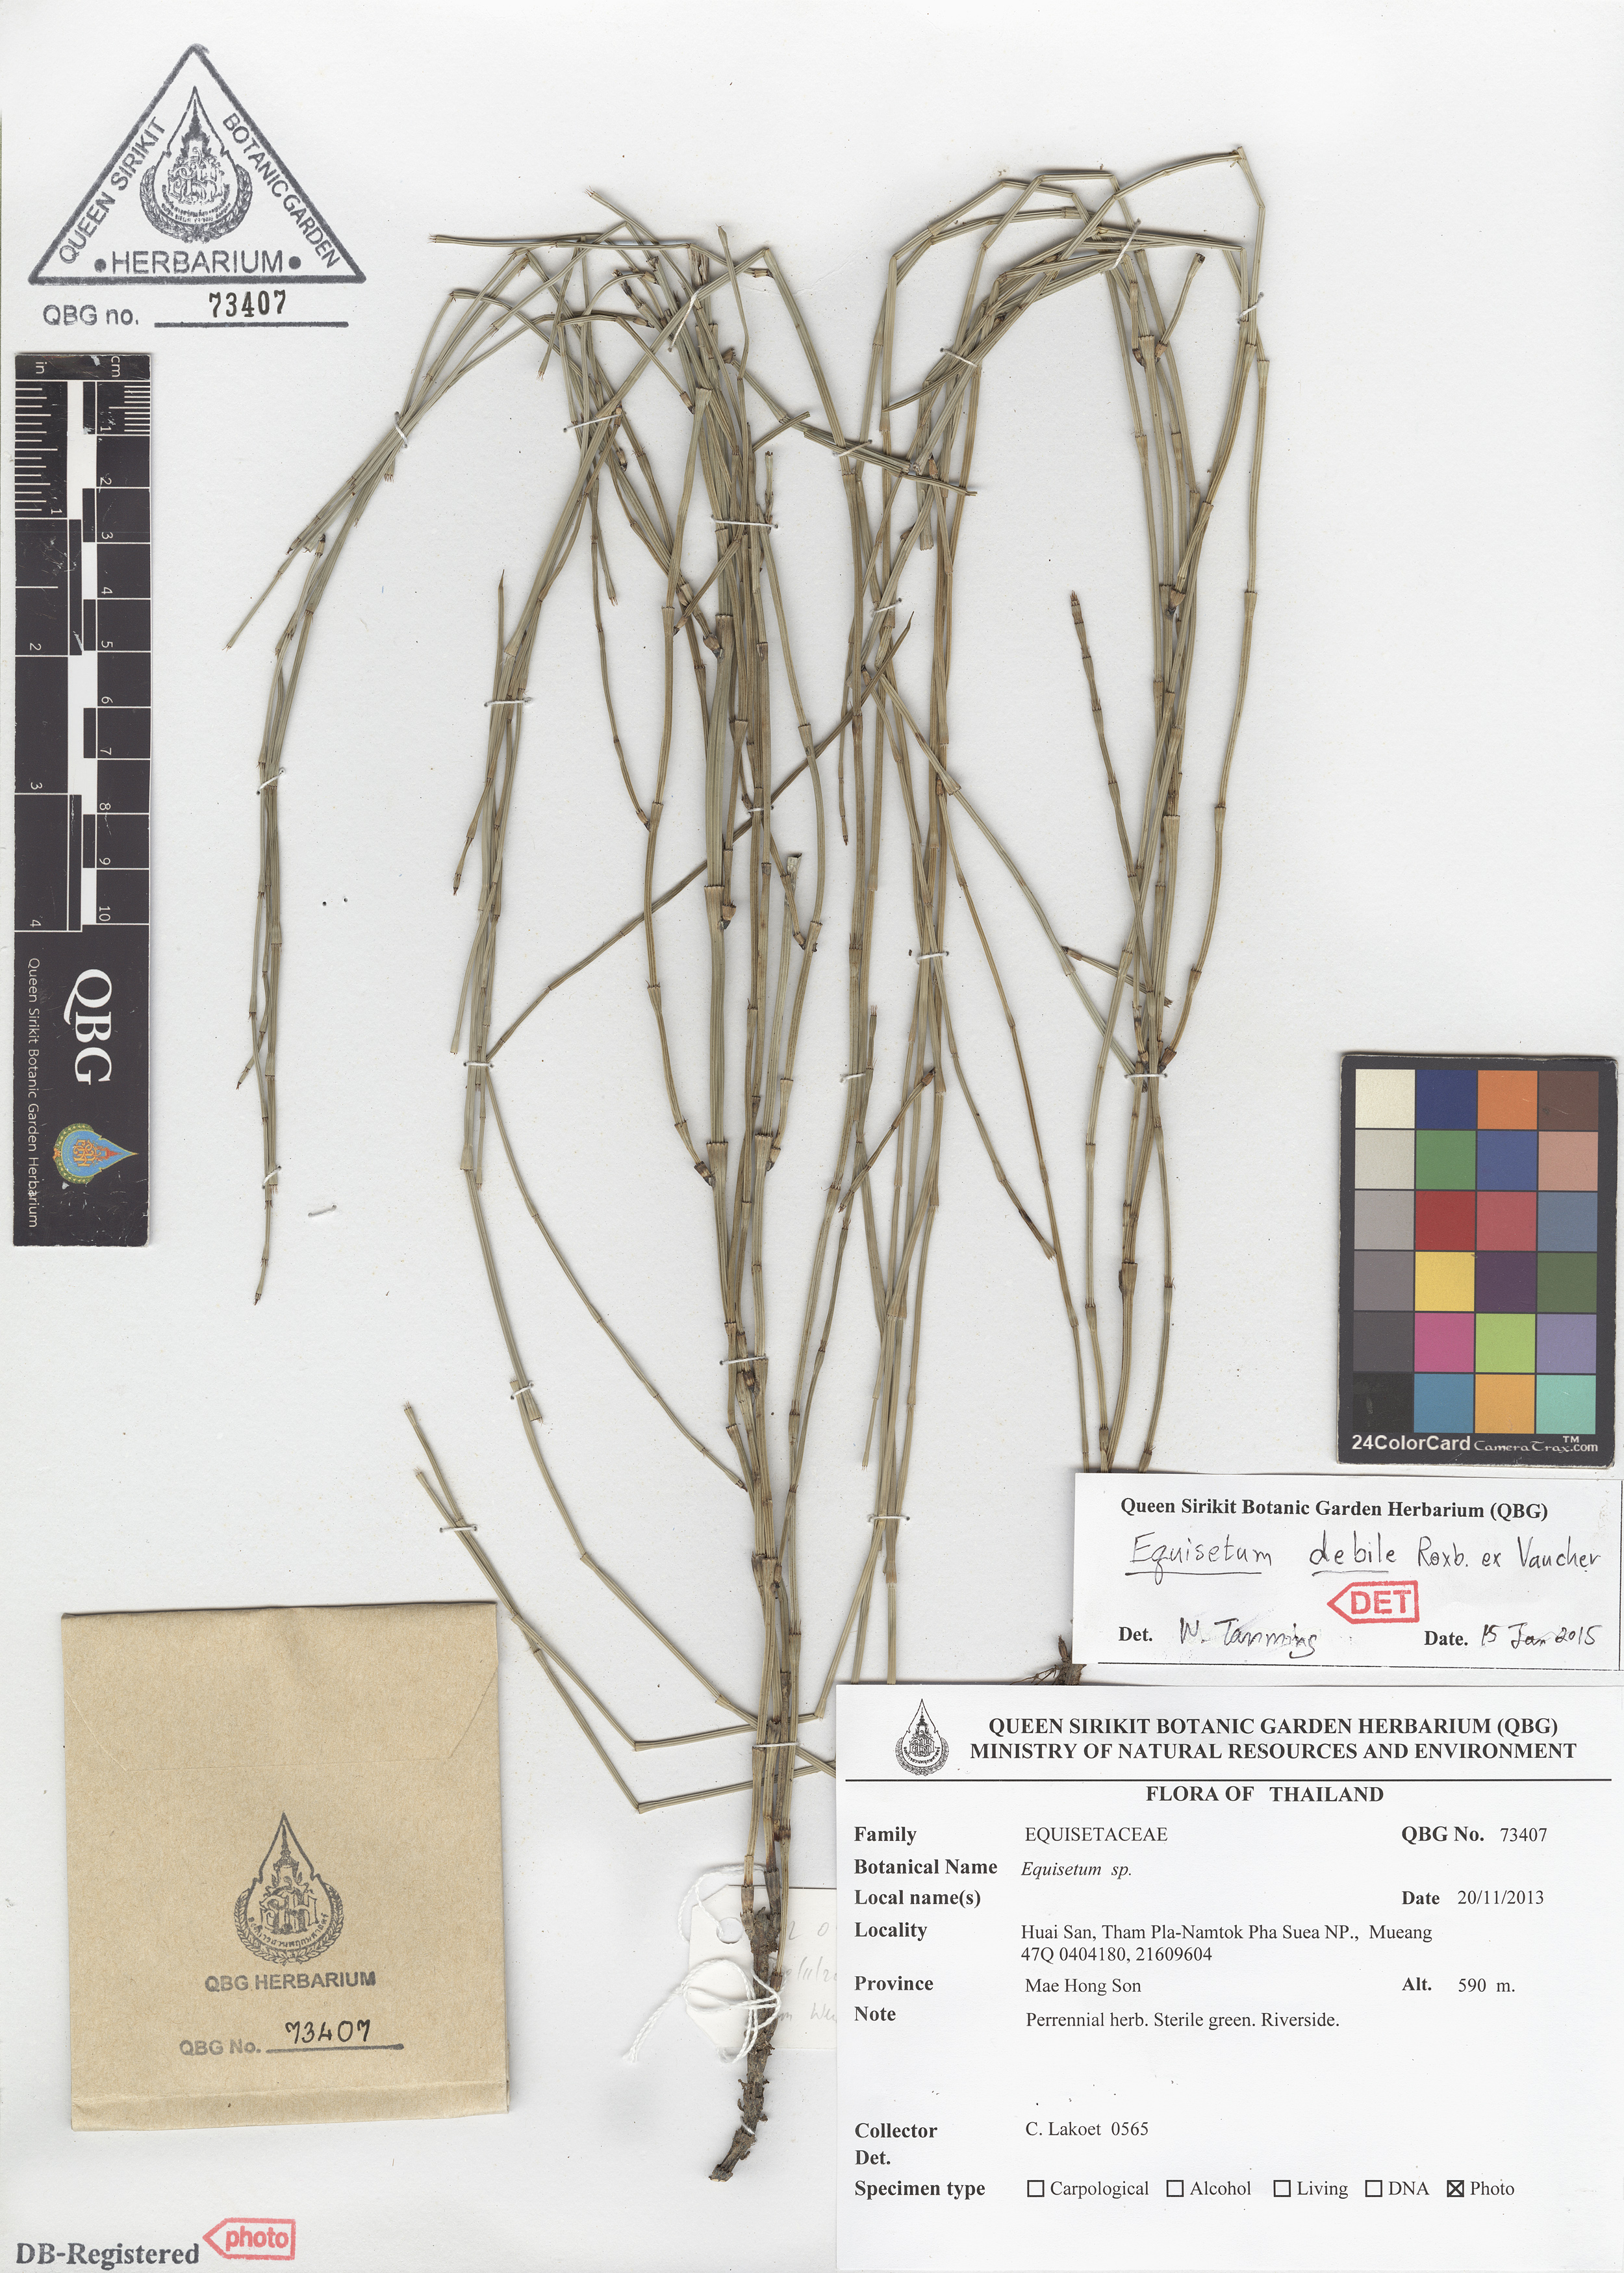 ภาพที่ 1  Equisetum debile Roxb. ex Vaucher